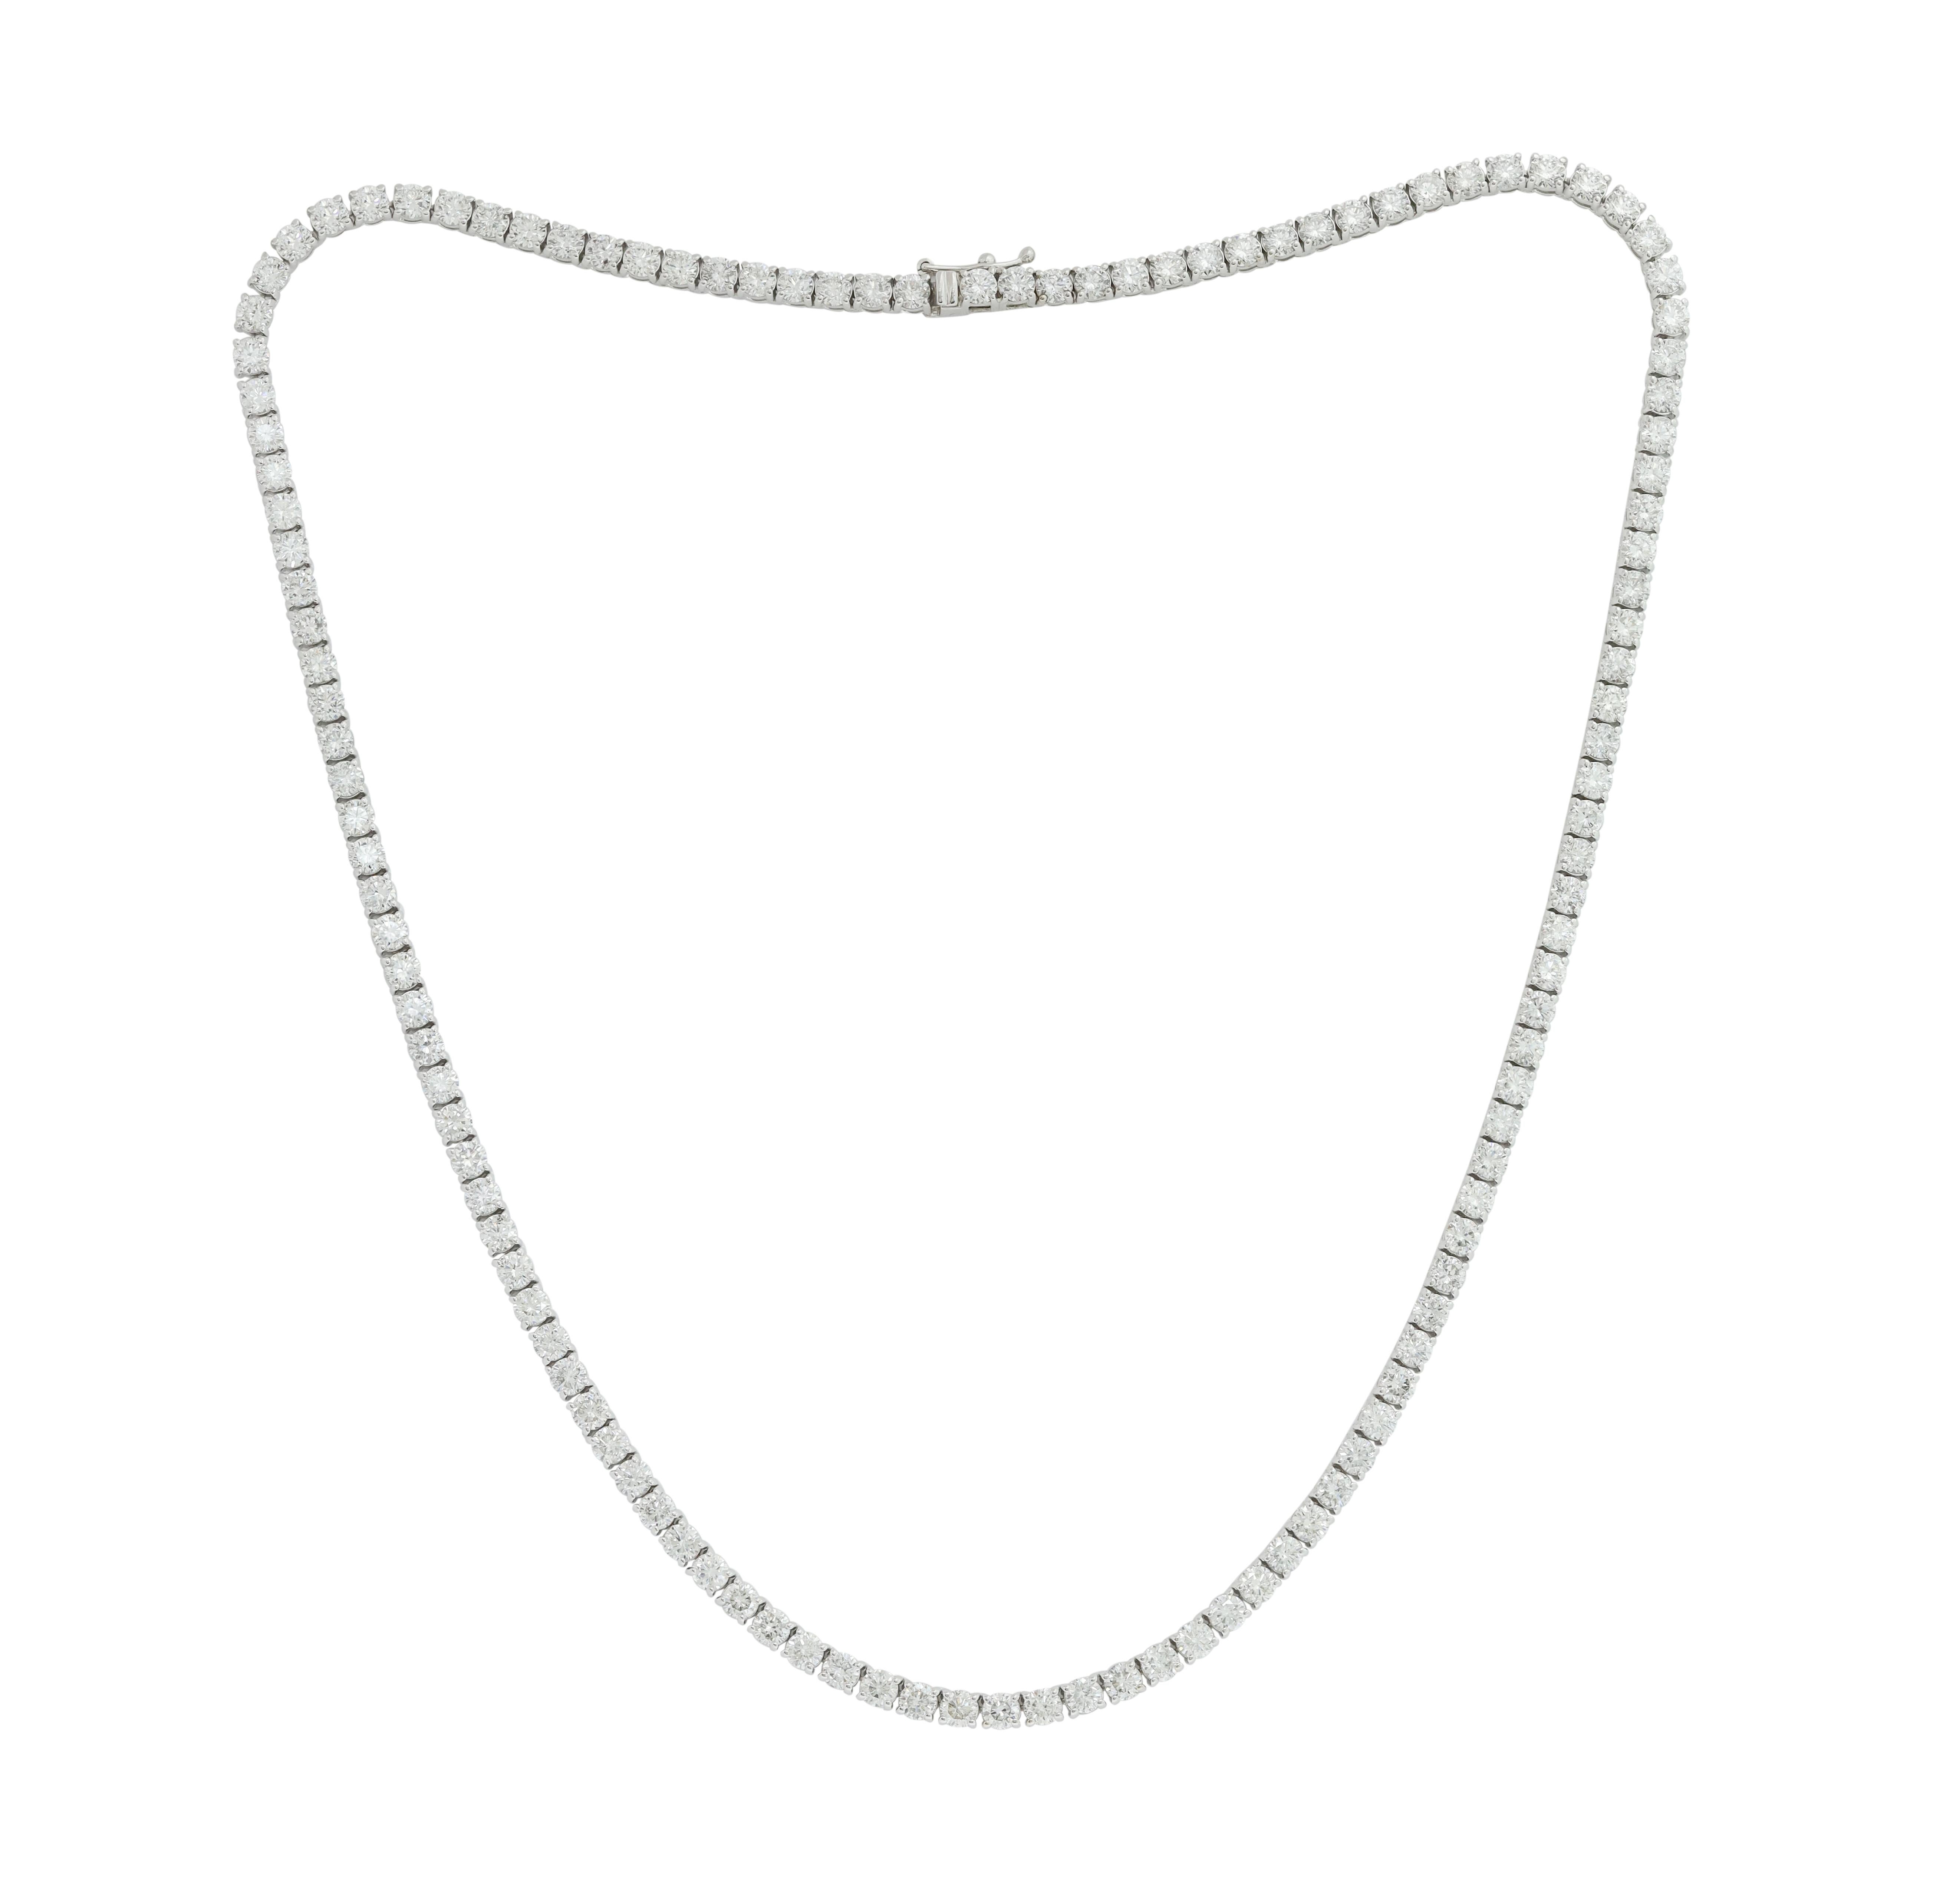 14K Weißgold Diamond Straight Line Tennis Halskette Features 13,00 Karat von Diamanten. Diana M. ist seit über 35 Jahren ein führender Anbieter von hochwertigem Schmuck.
Diana M ist ein One-Stop-Shop für alle Ihre Schmuckeinkäufe und führt eine